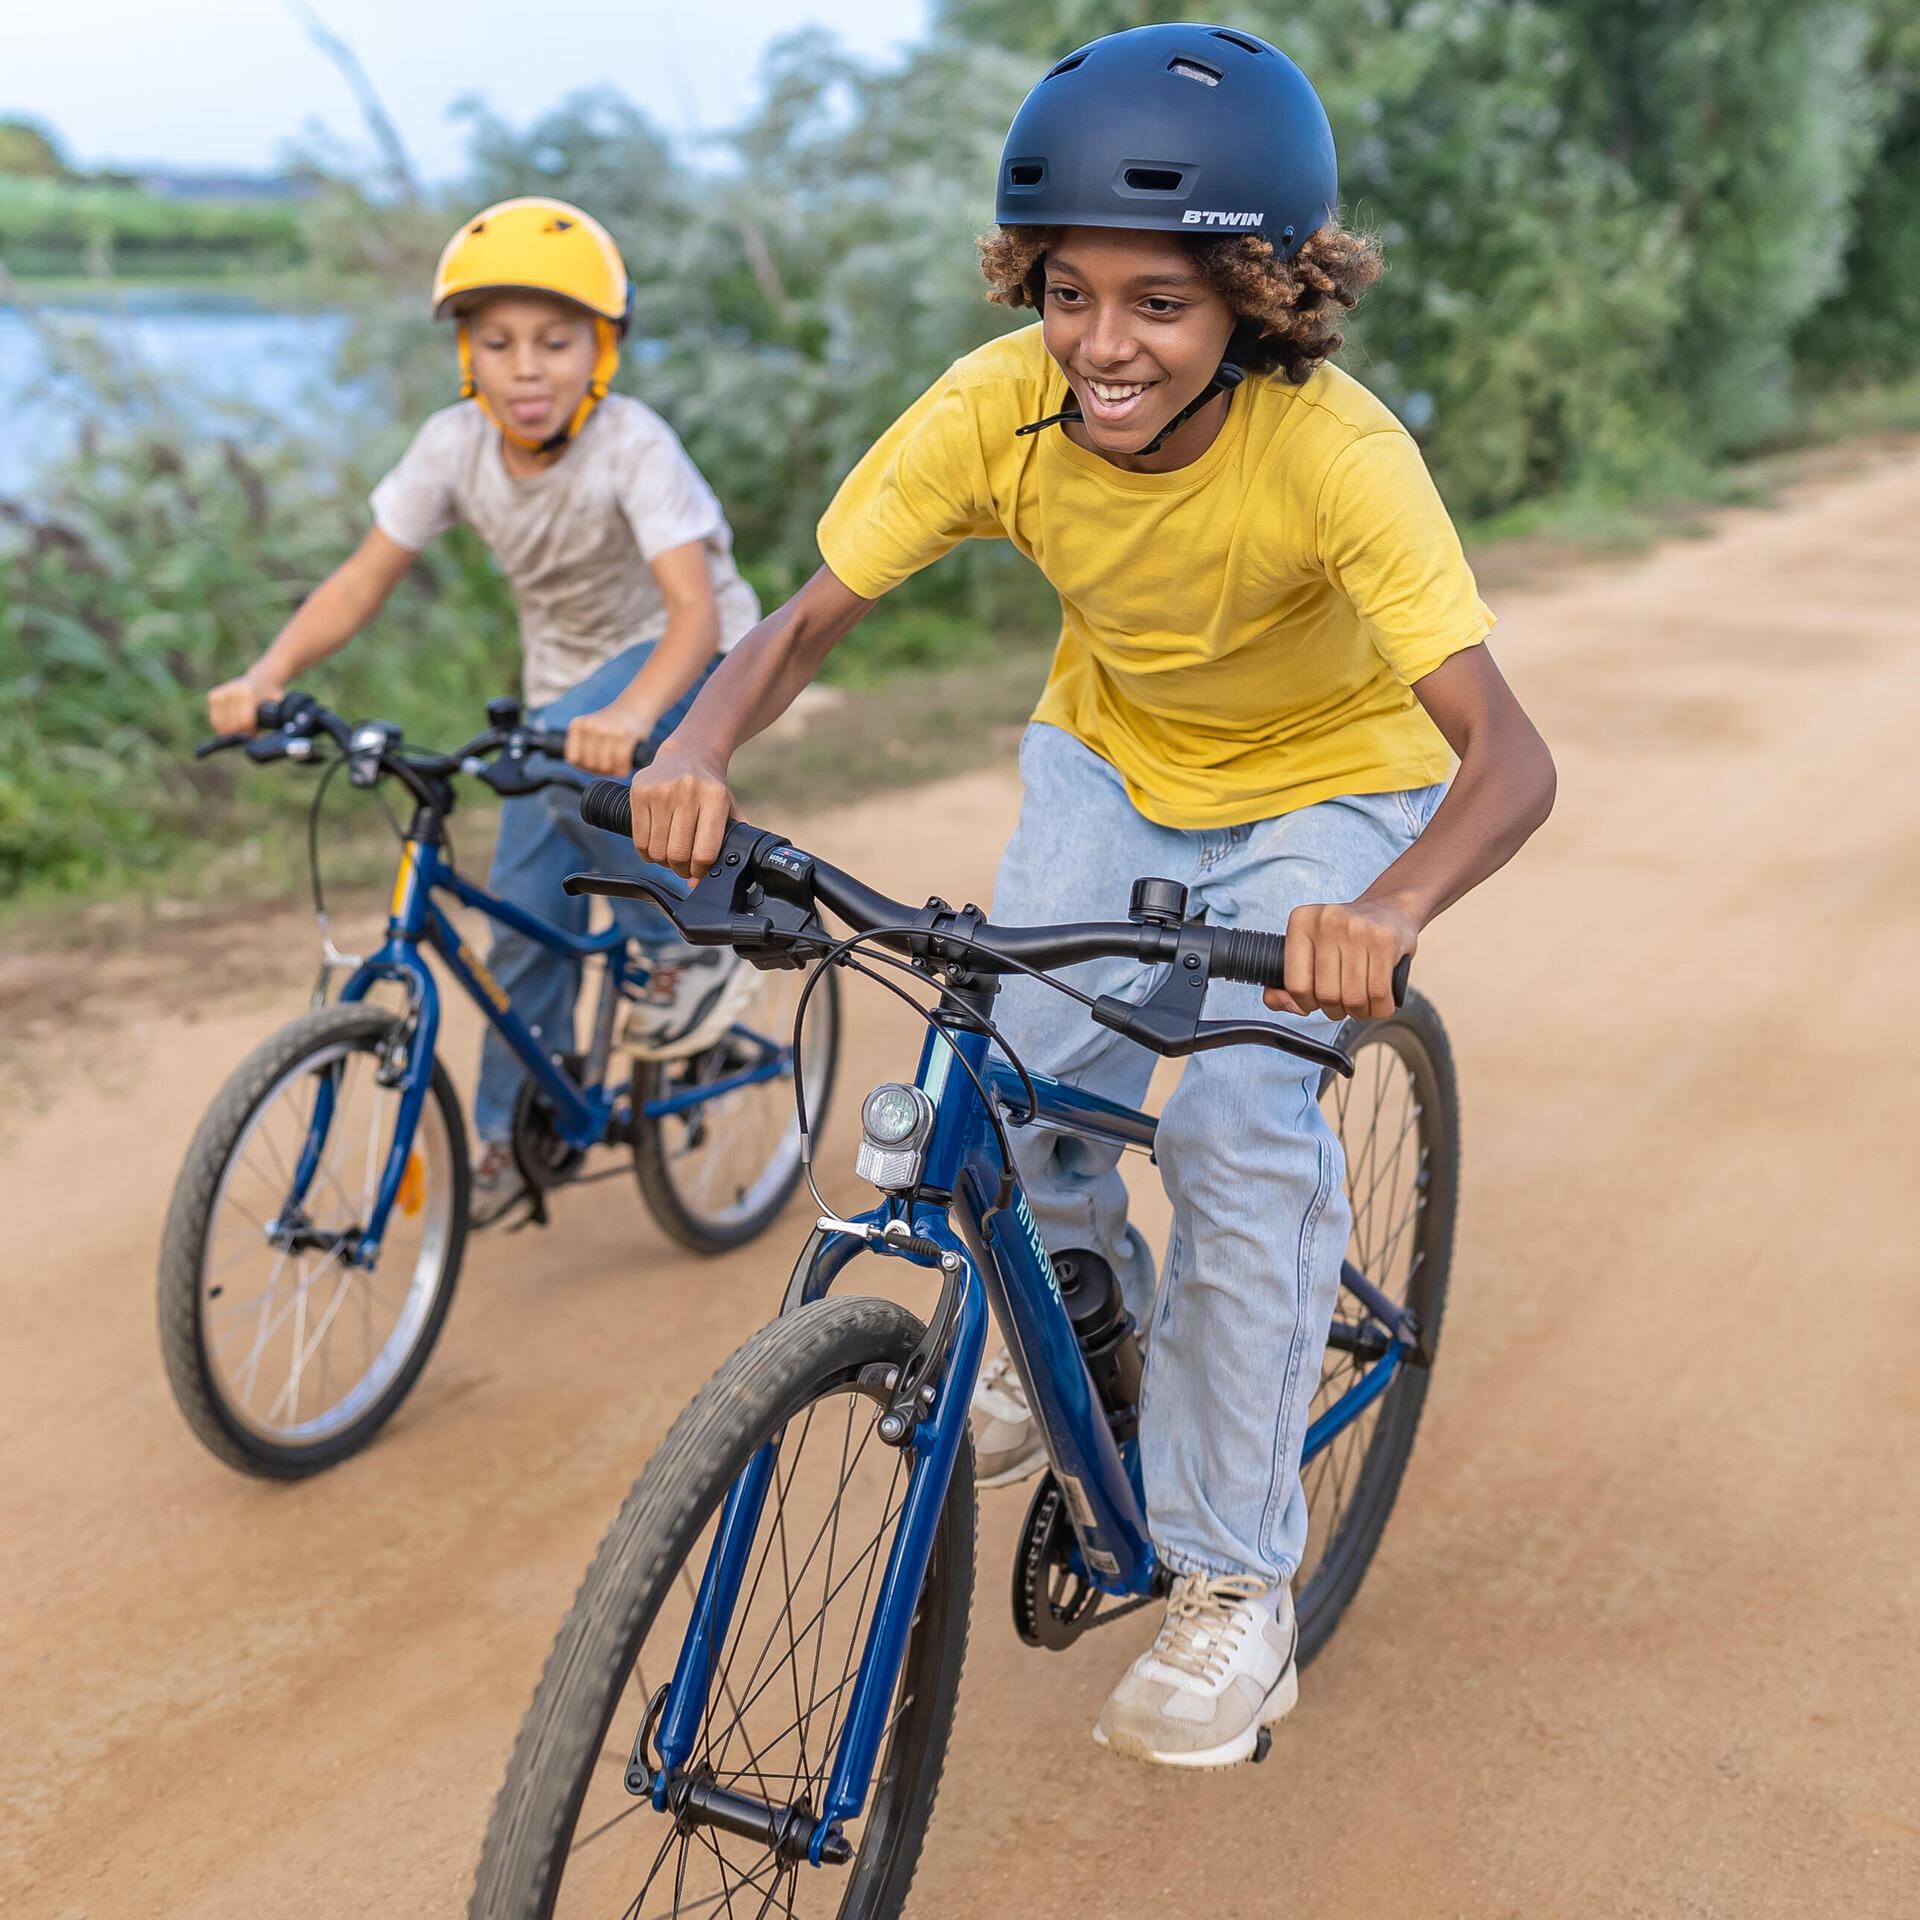 À quel âge un enfant peut-il circuler seul à vélo sur la route